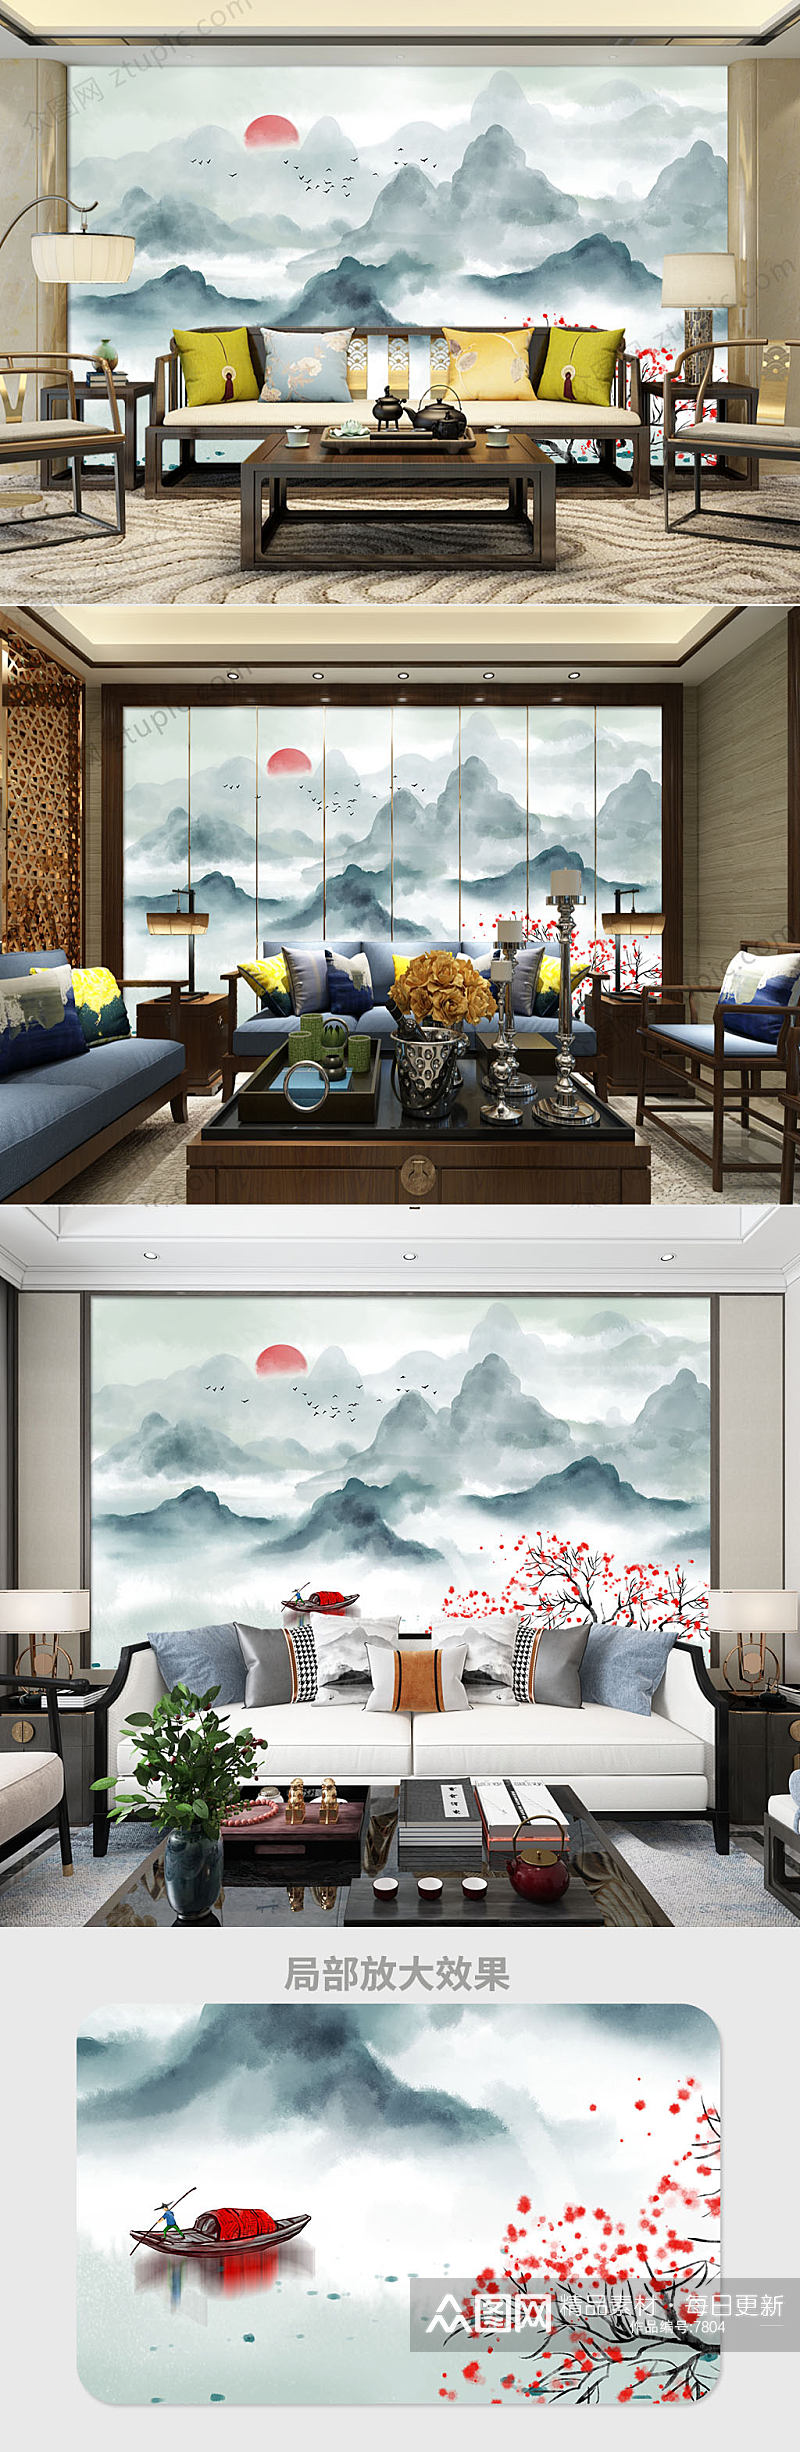 新中式意境水墨山水背景墙素材